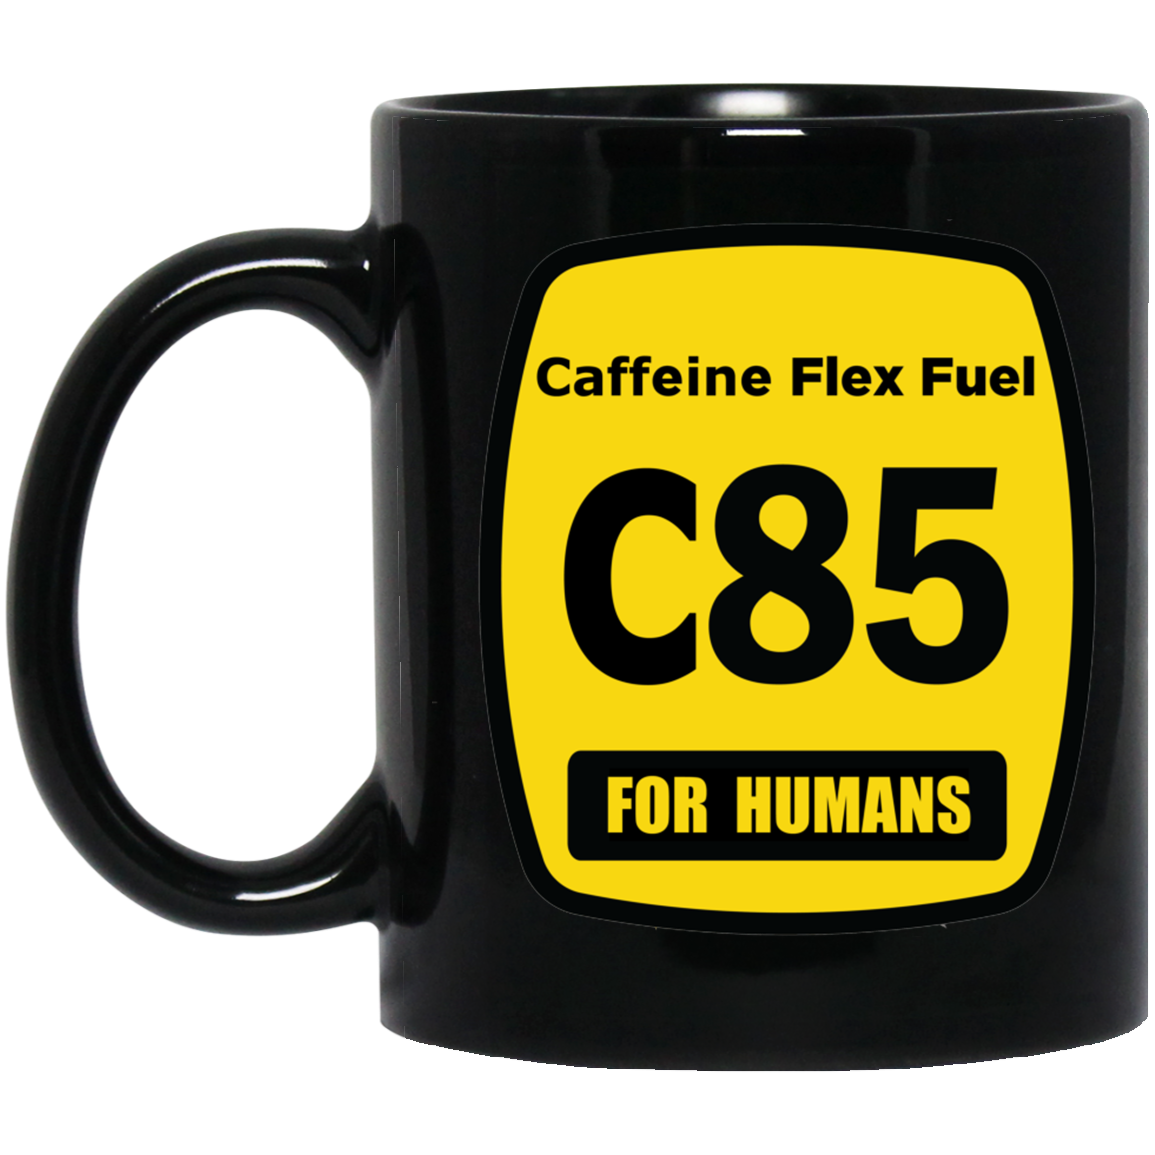 Caffeine Flex Fuel - C85 11 oz. Black Mug